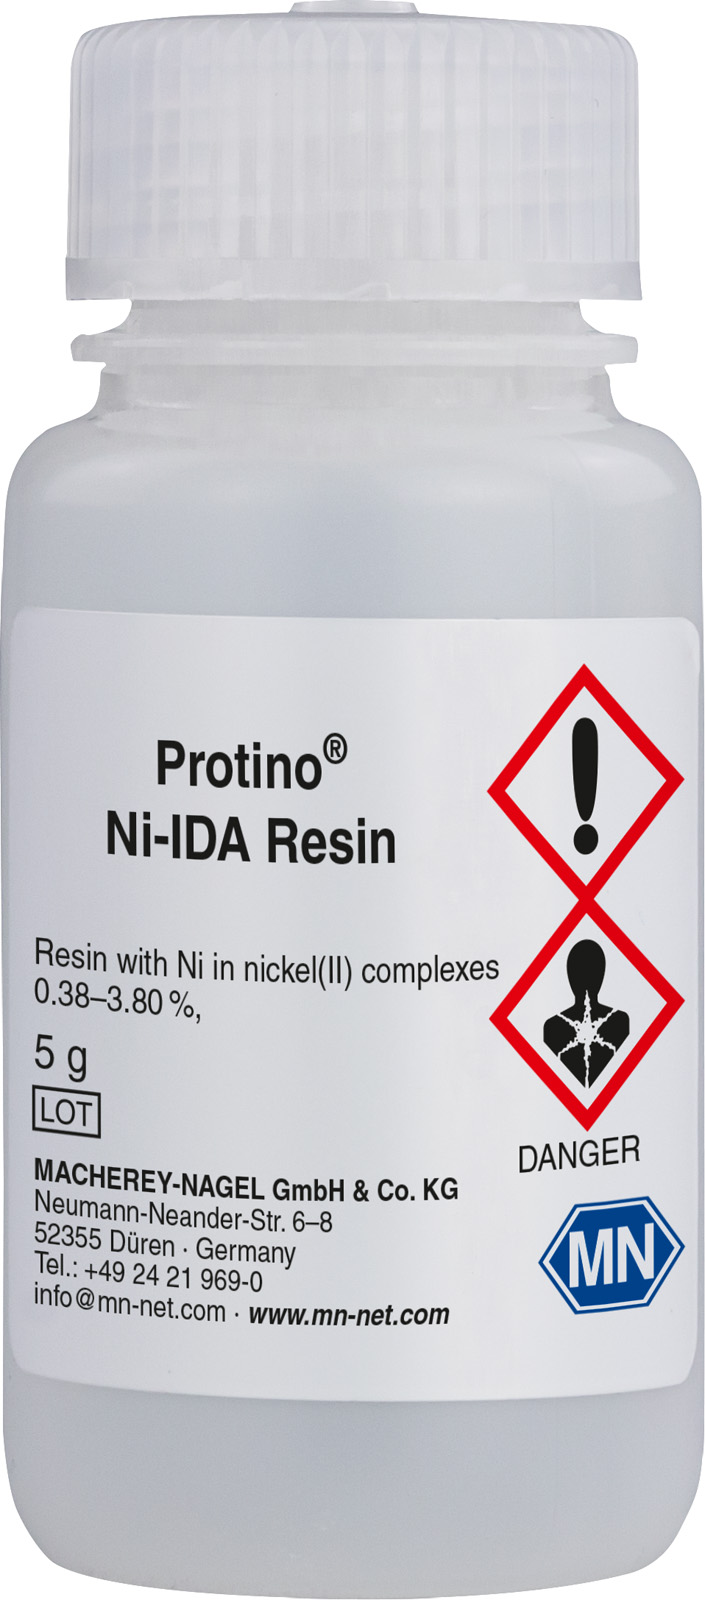 Oczyszczanie His-tag białek Żywica - wiązanie, przepływ grawitacyjny, FPLC™ Protino Ni-IDA Resin